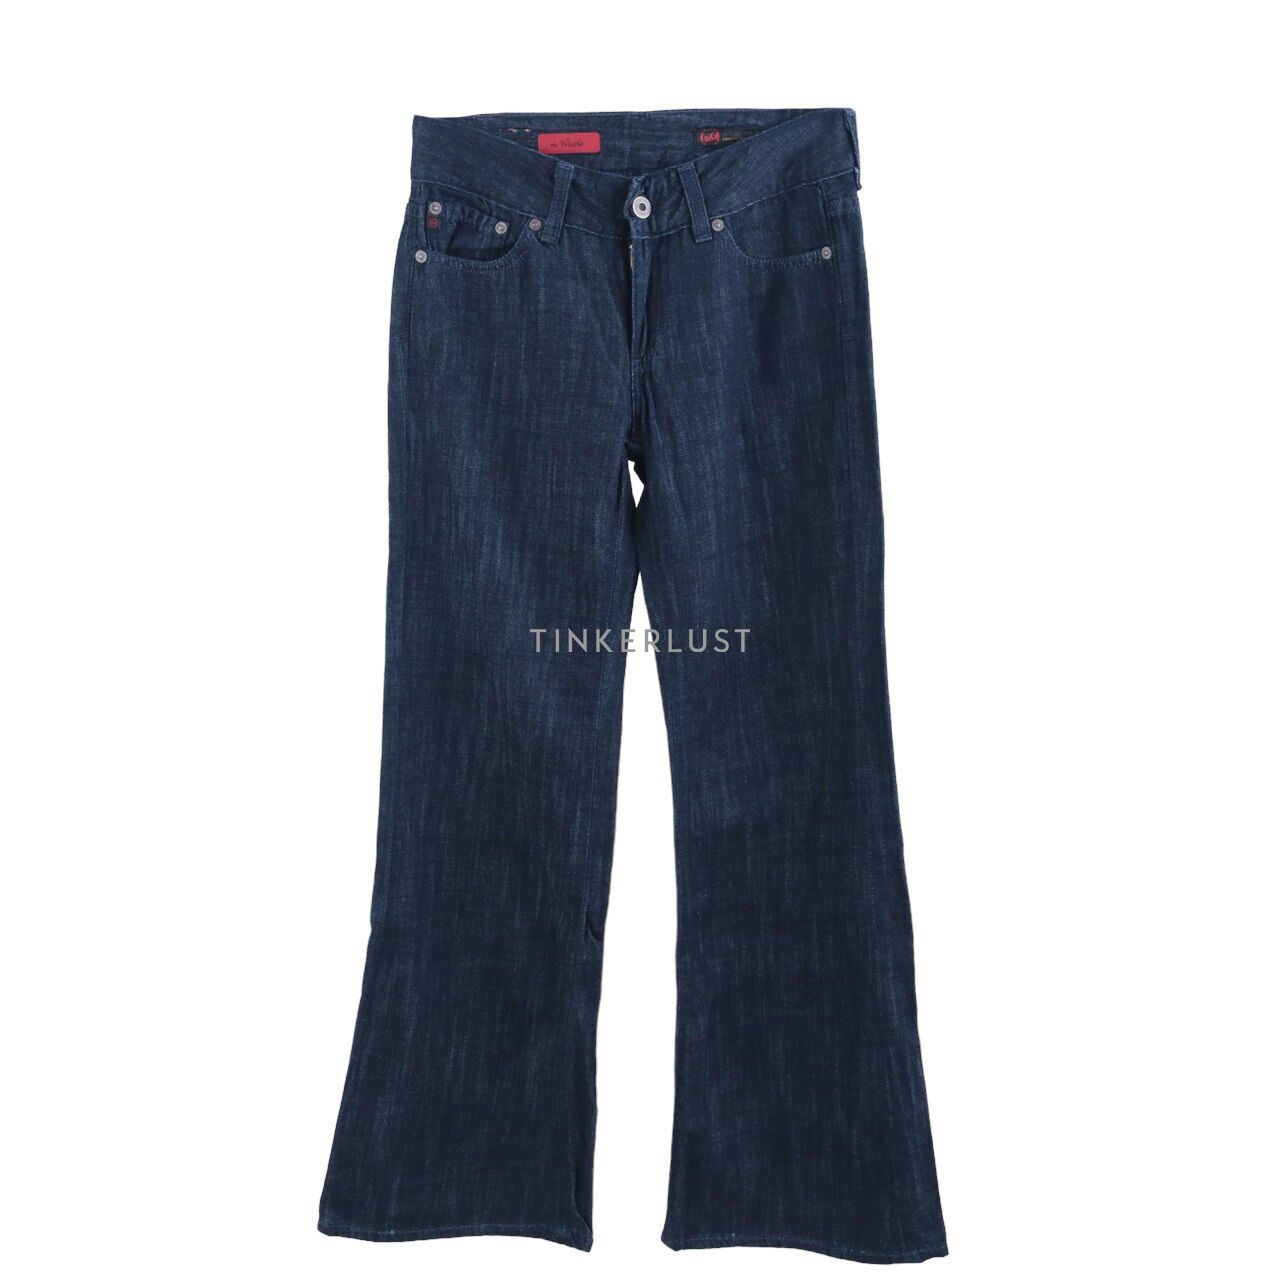 Adriano Goldschmied Dark Blue Jeans Long Pants